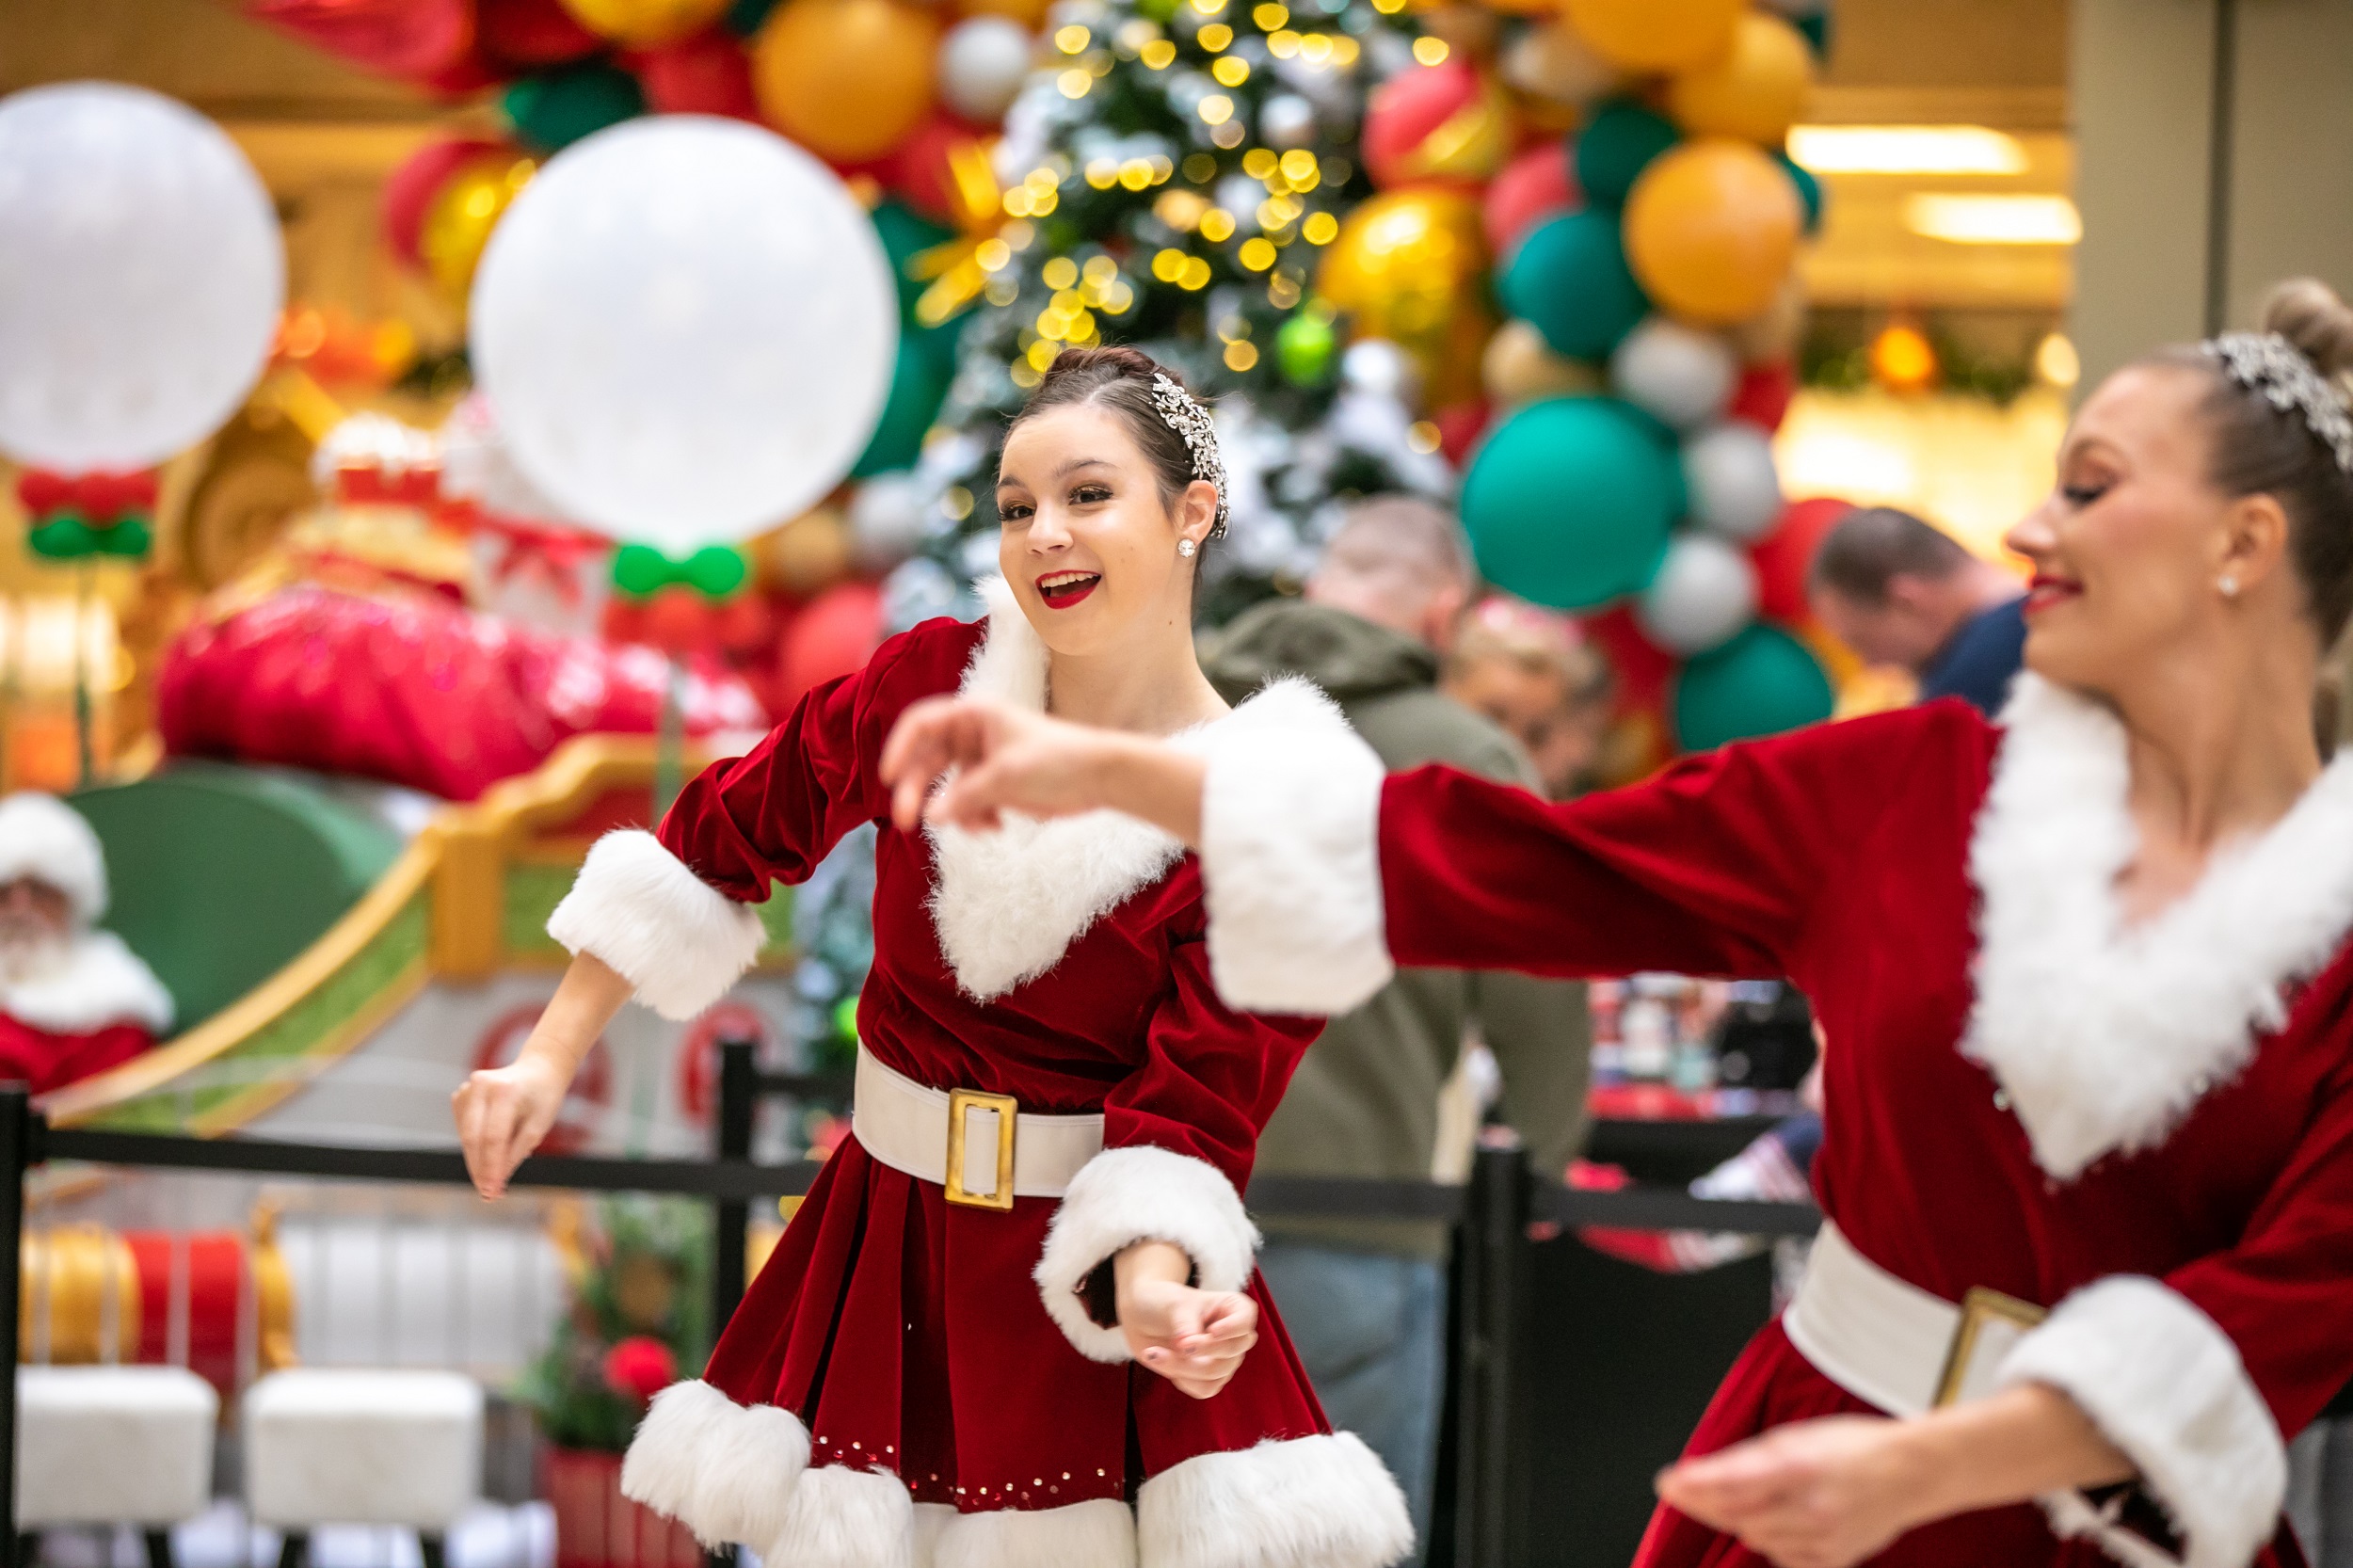 Two women dancing in Santa dresses